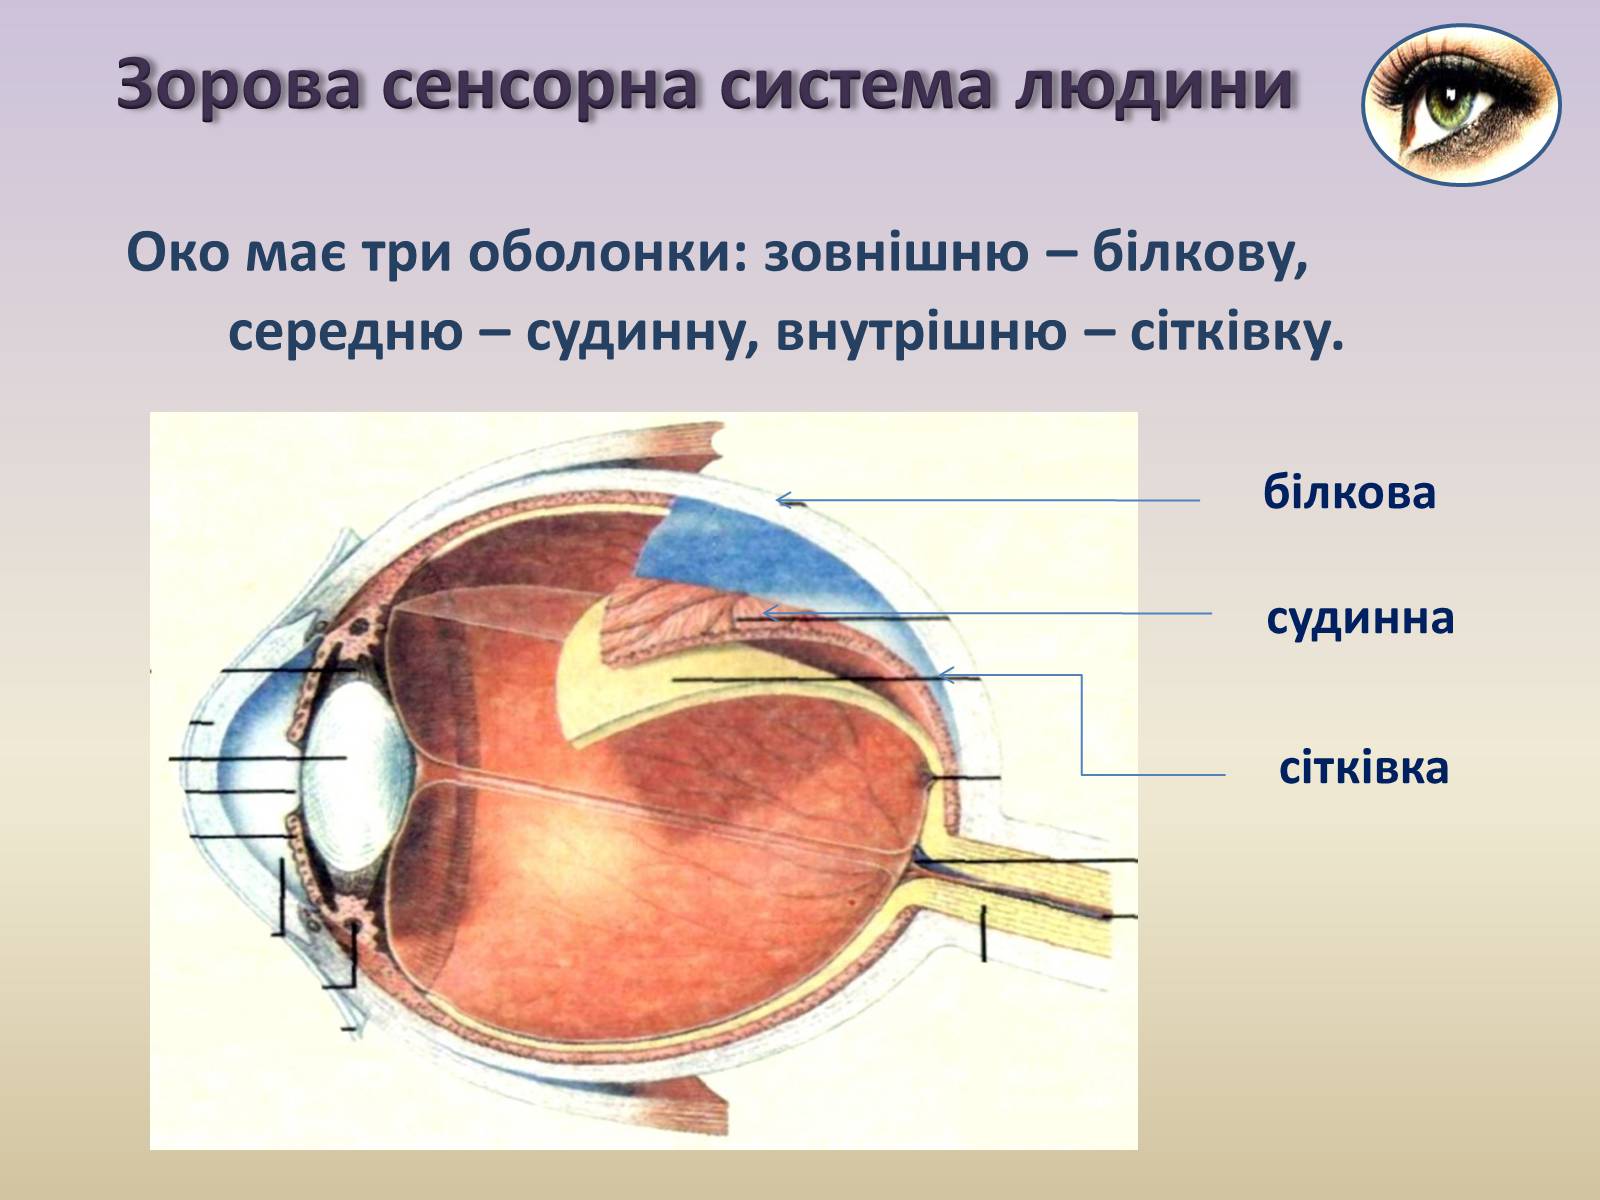 Функции оболочек глаза белочная сосудистая сетчатка